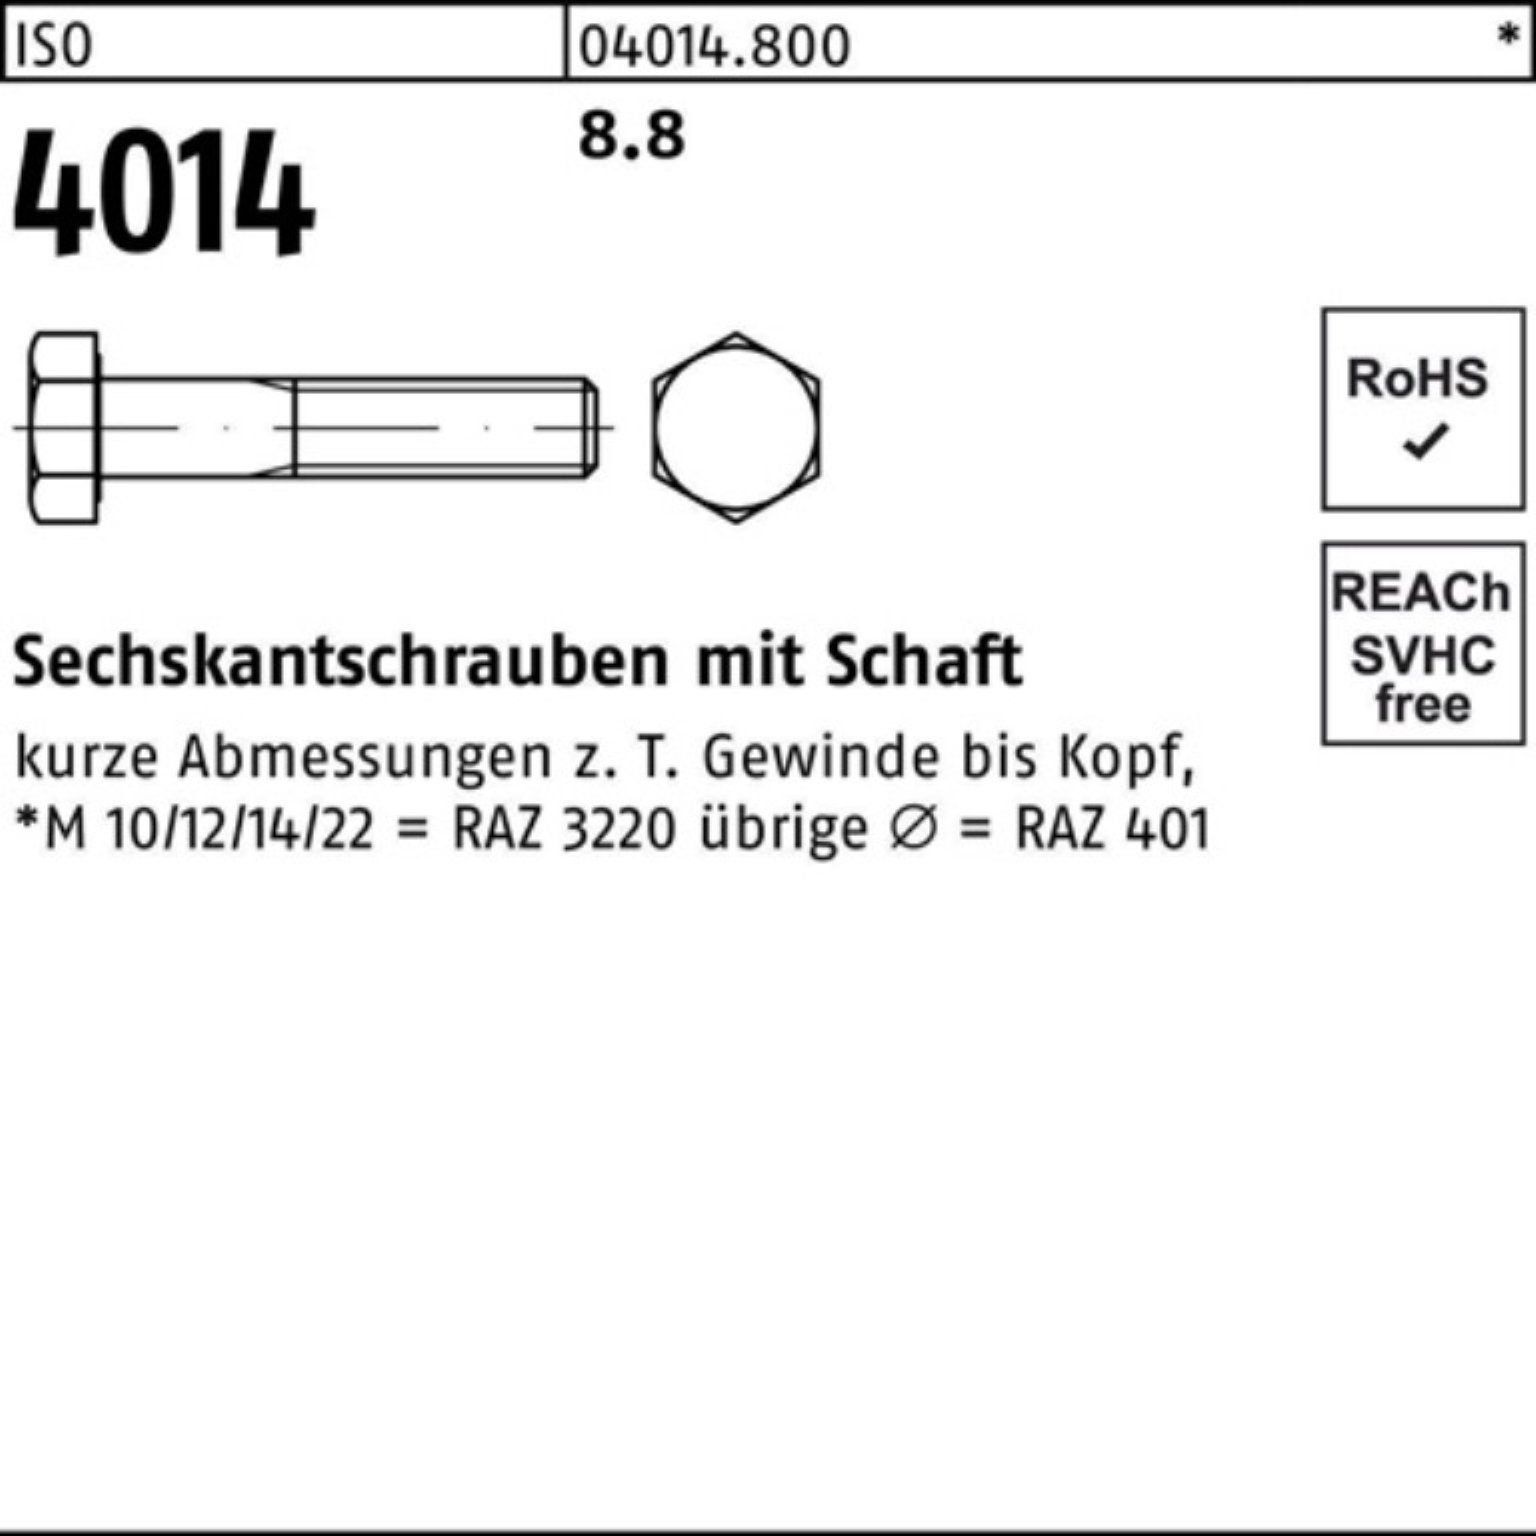 25 IS Pack Sechskantschraube 4014 340 M12x Sechskantschraube Stück ISO 8.8 Bufab Schaft 100er